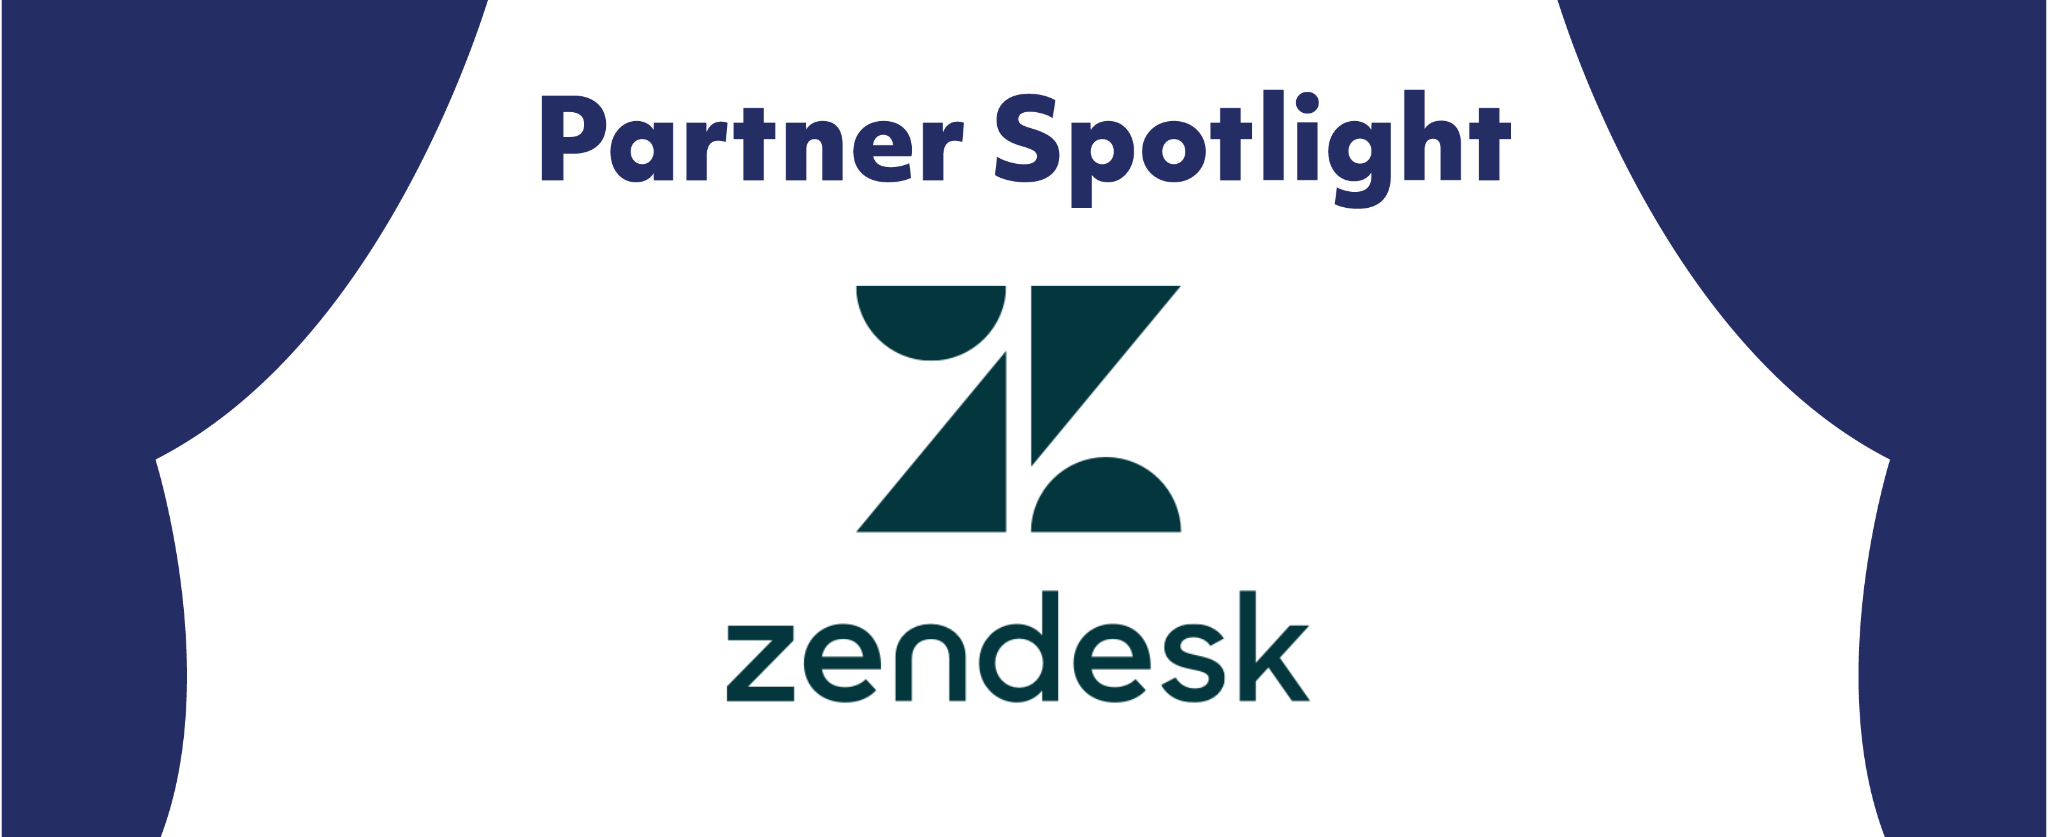 Partner Spotlight: Zendesk